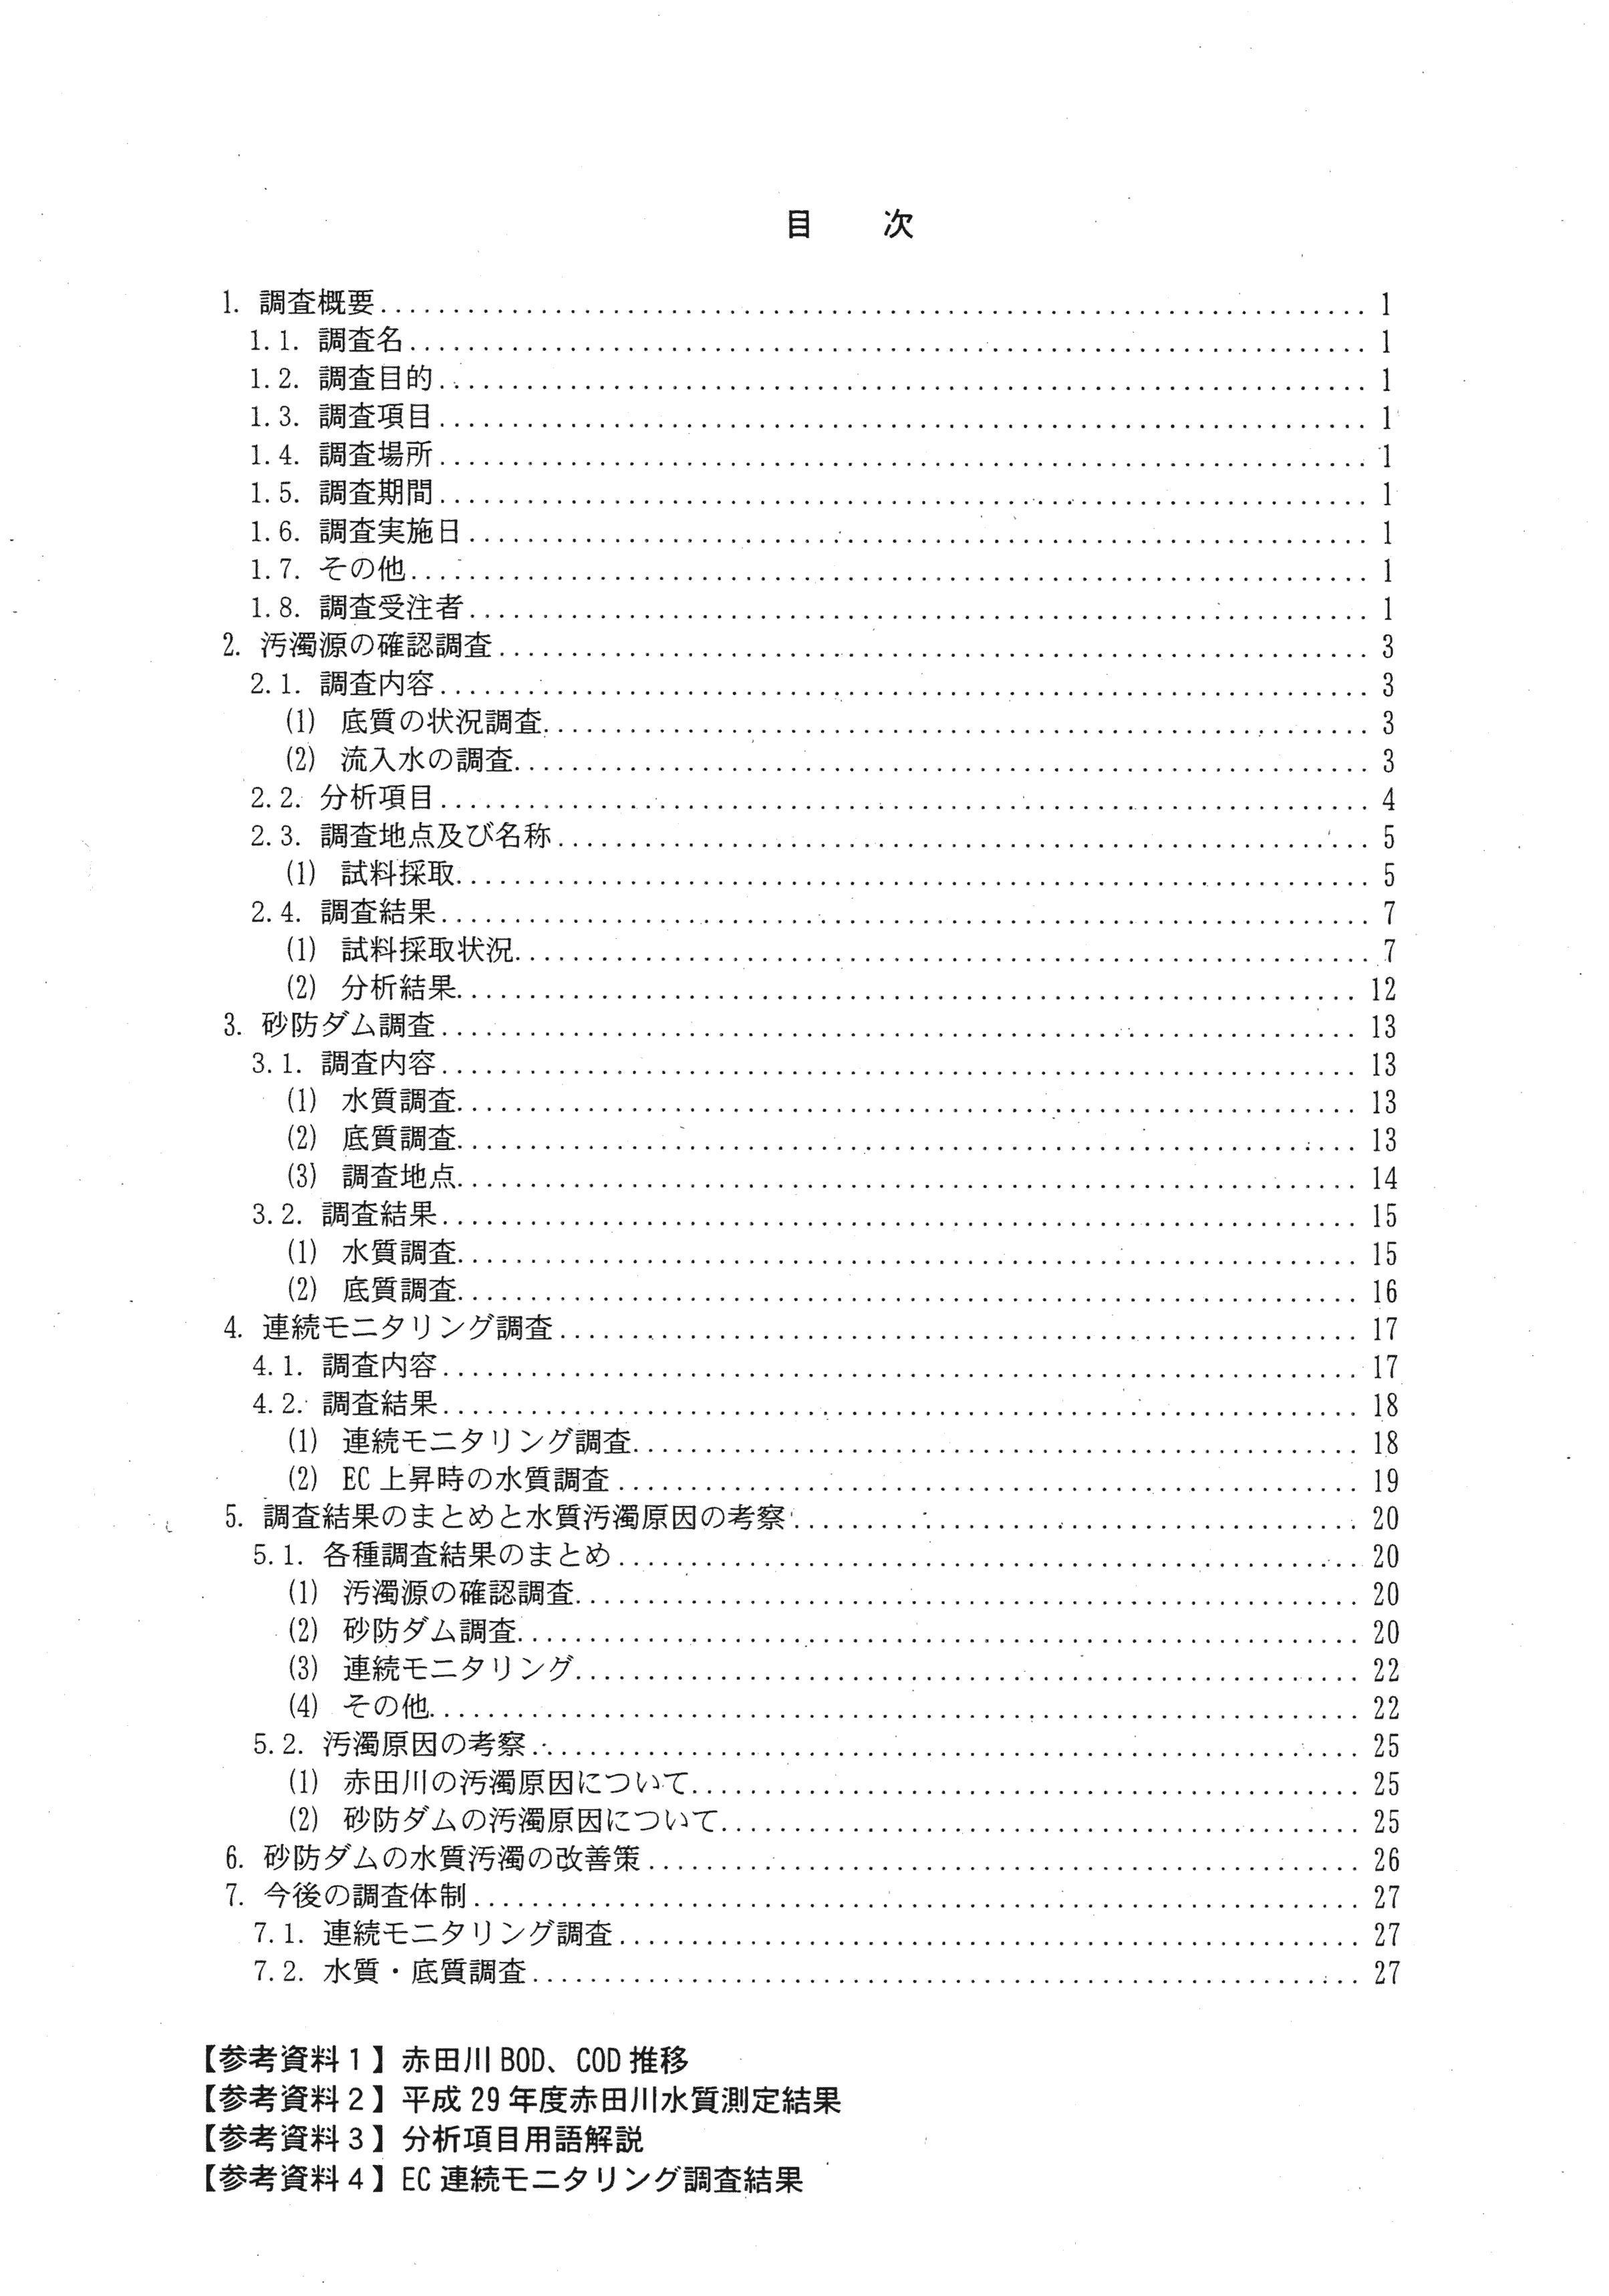 平成29年11月-赤田川水質汚濁状況調査報告書-02